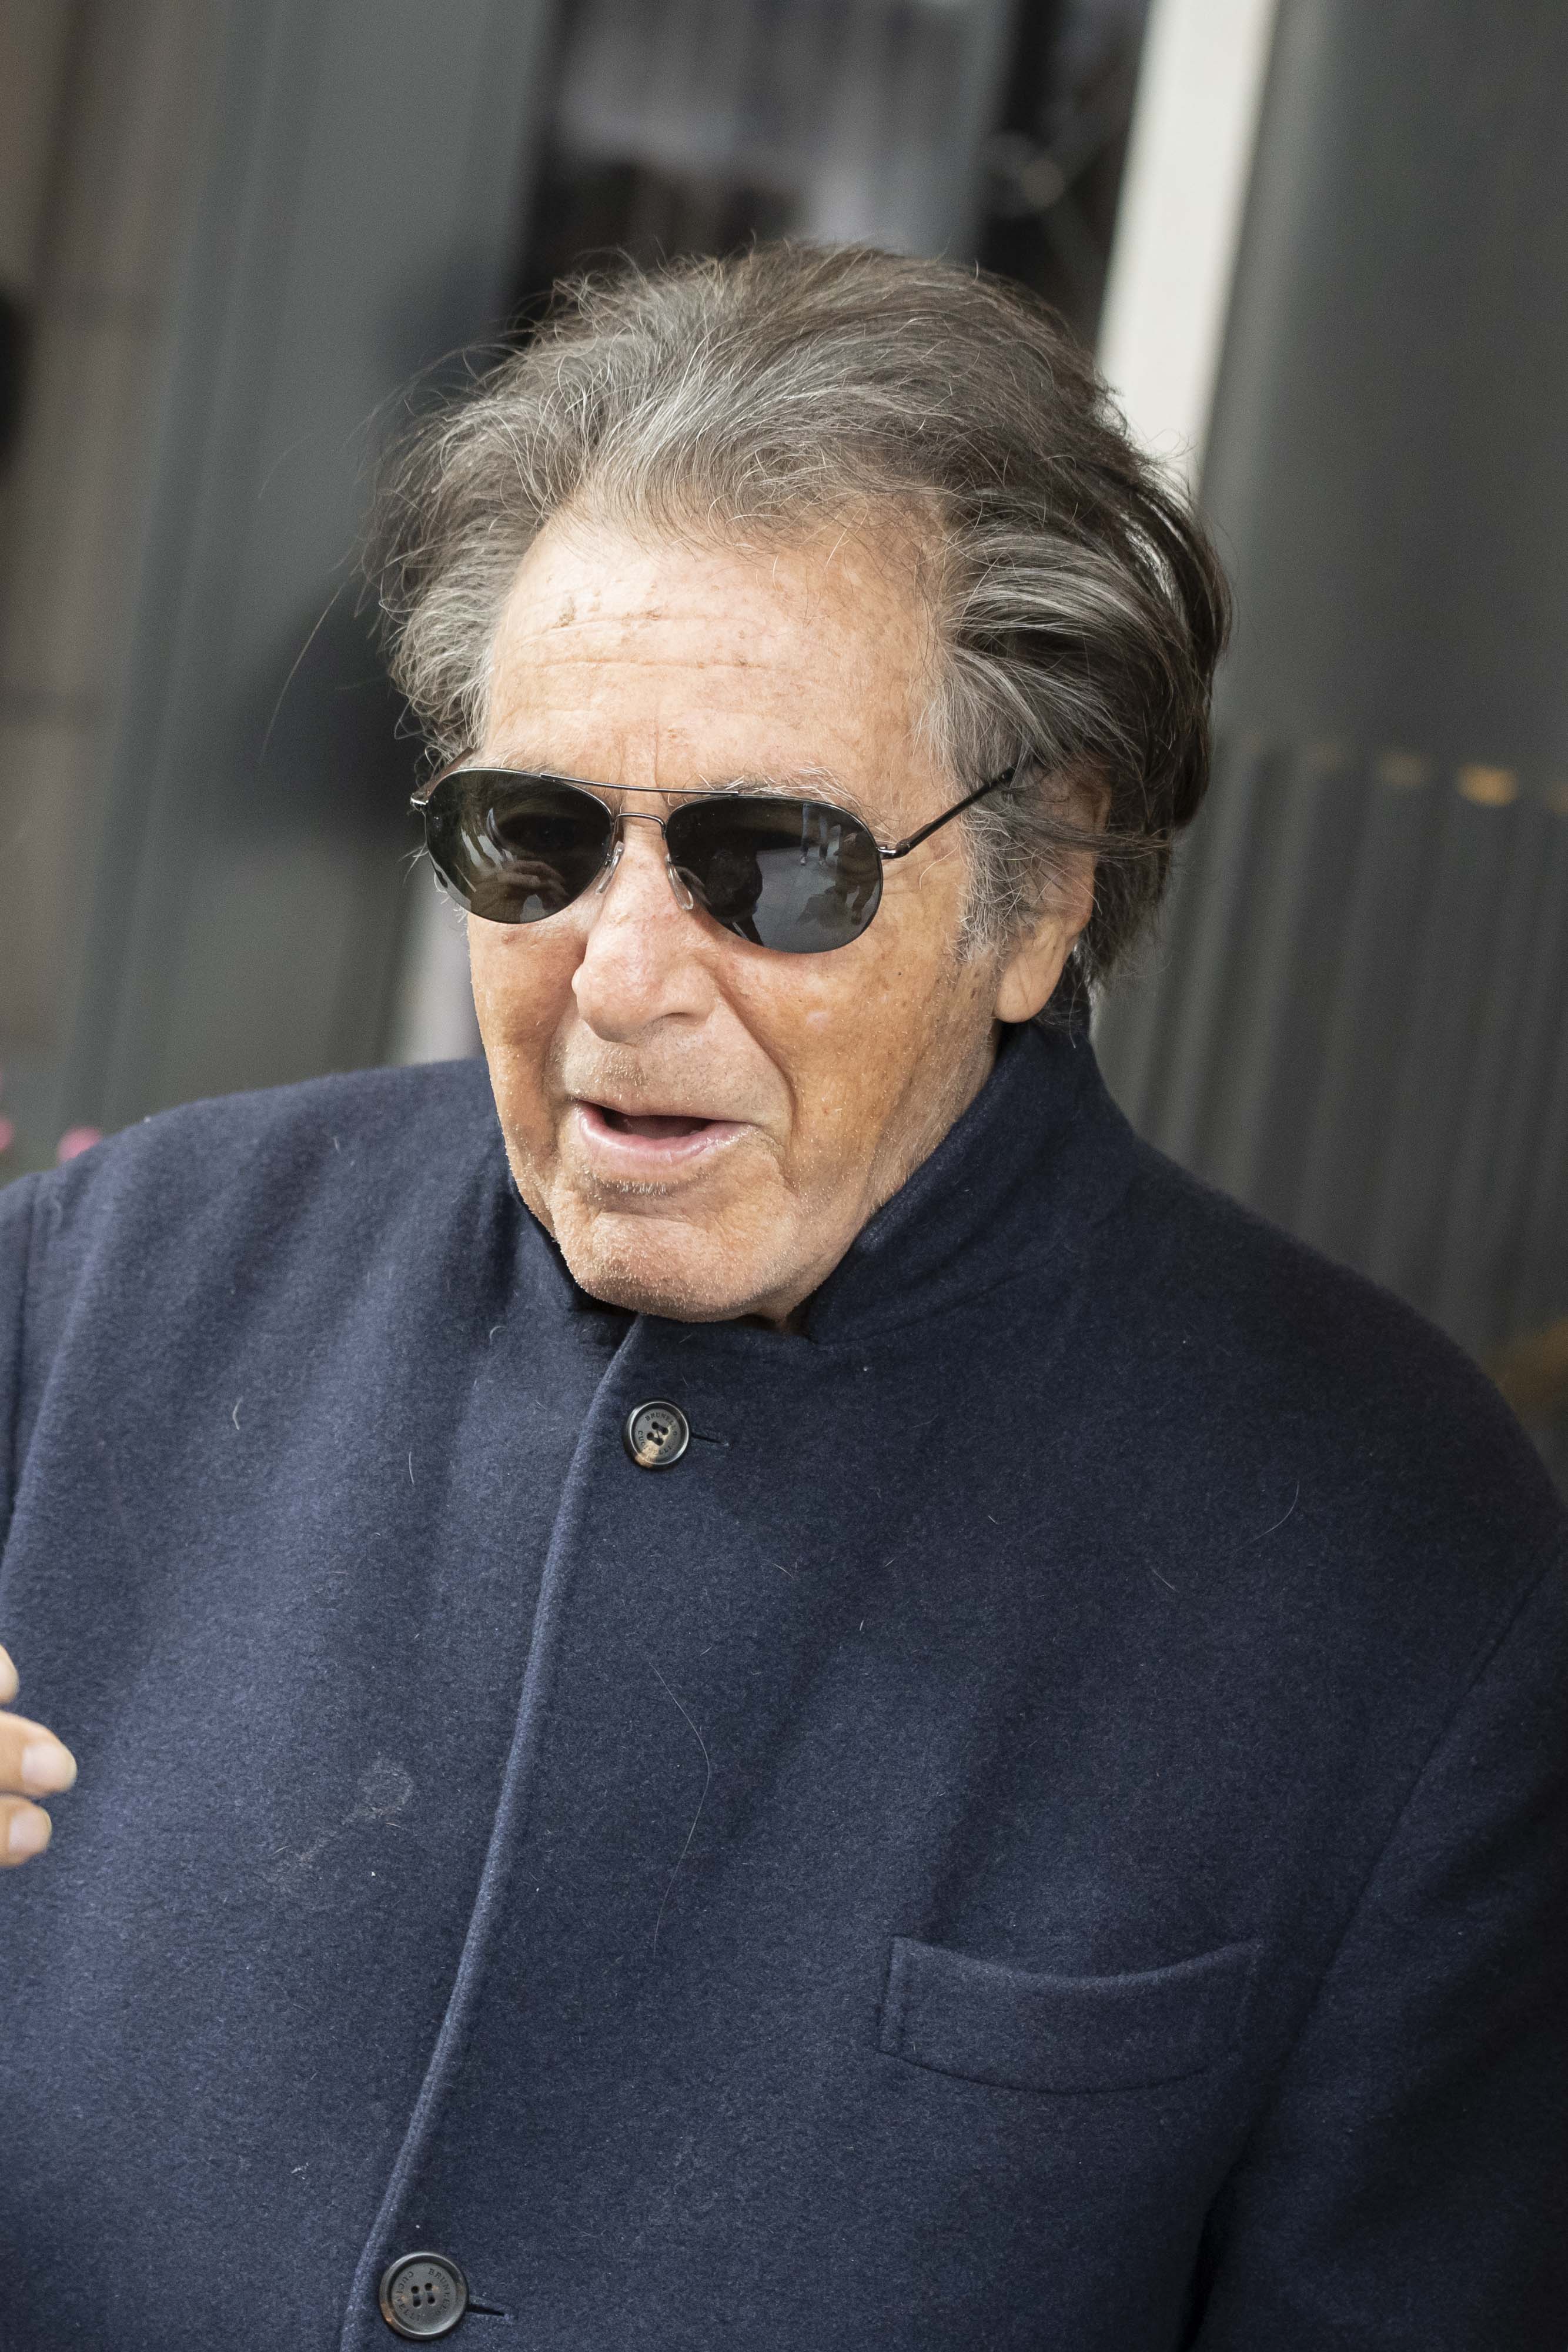 Al Pacino visto en su hotel mientras filmaba "House of Gucci", dirigida por Ridley Scott. | Foto: Getty Images